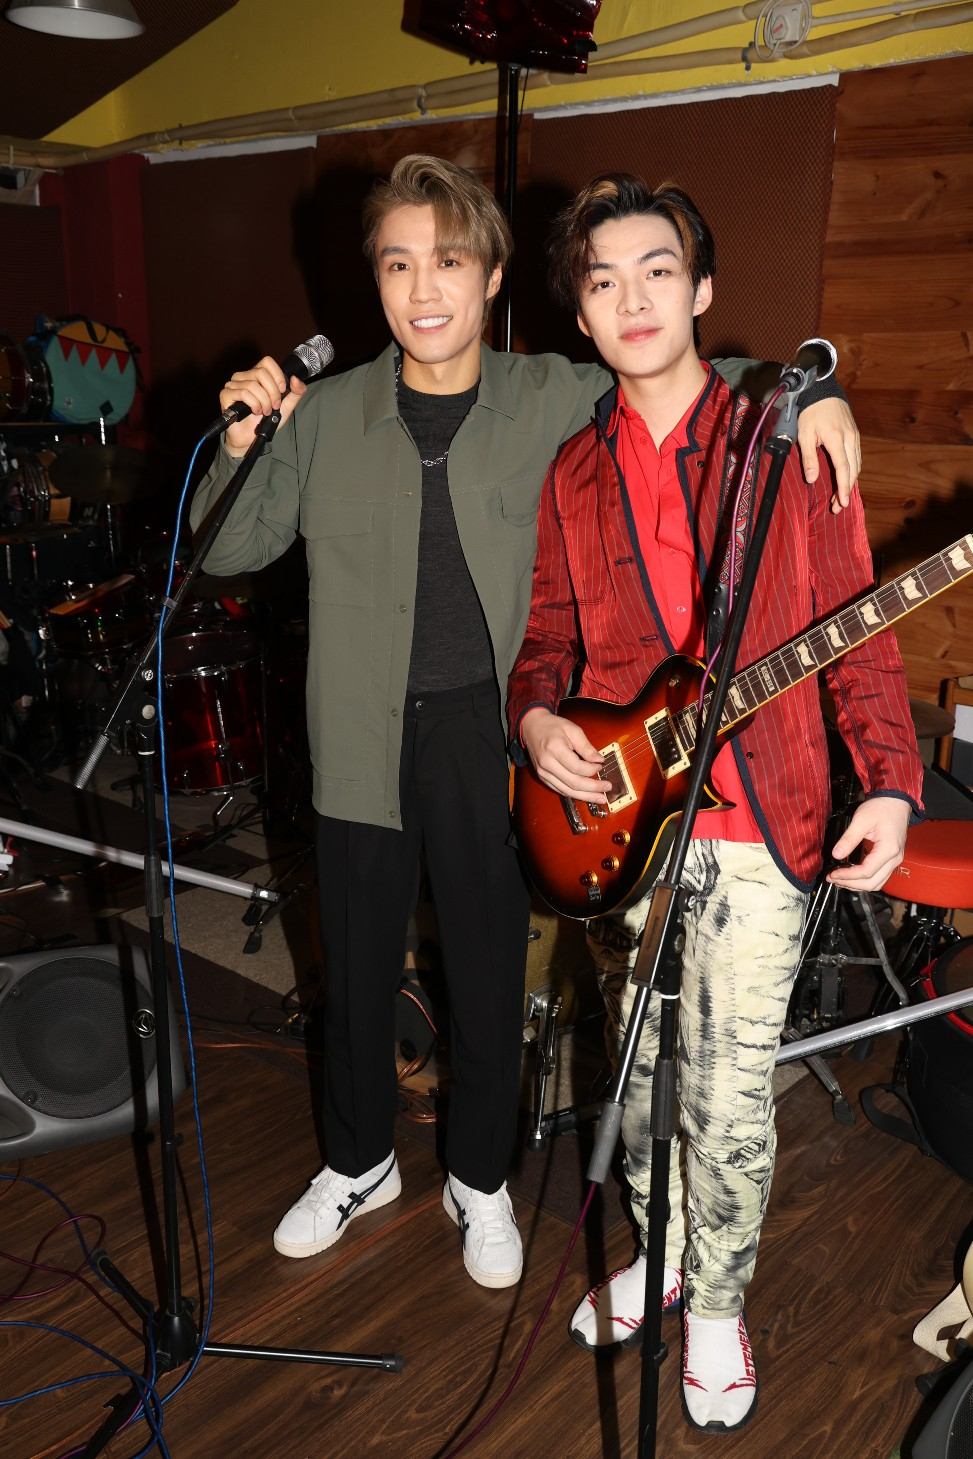 丁子朗和余宗遙在「亞洲超星團」節目中演唱歌過謝霆鋒的一曲《活着VIVA》受到觀眾歡迎。